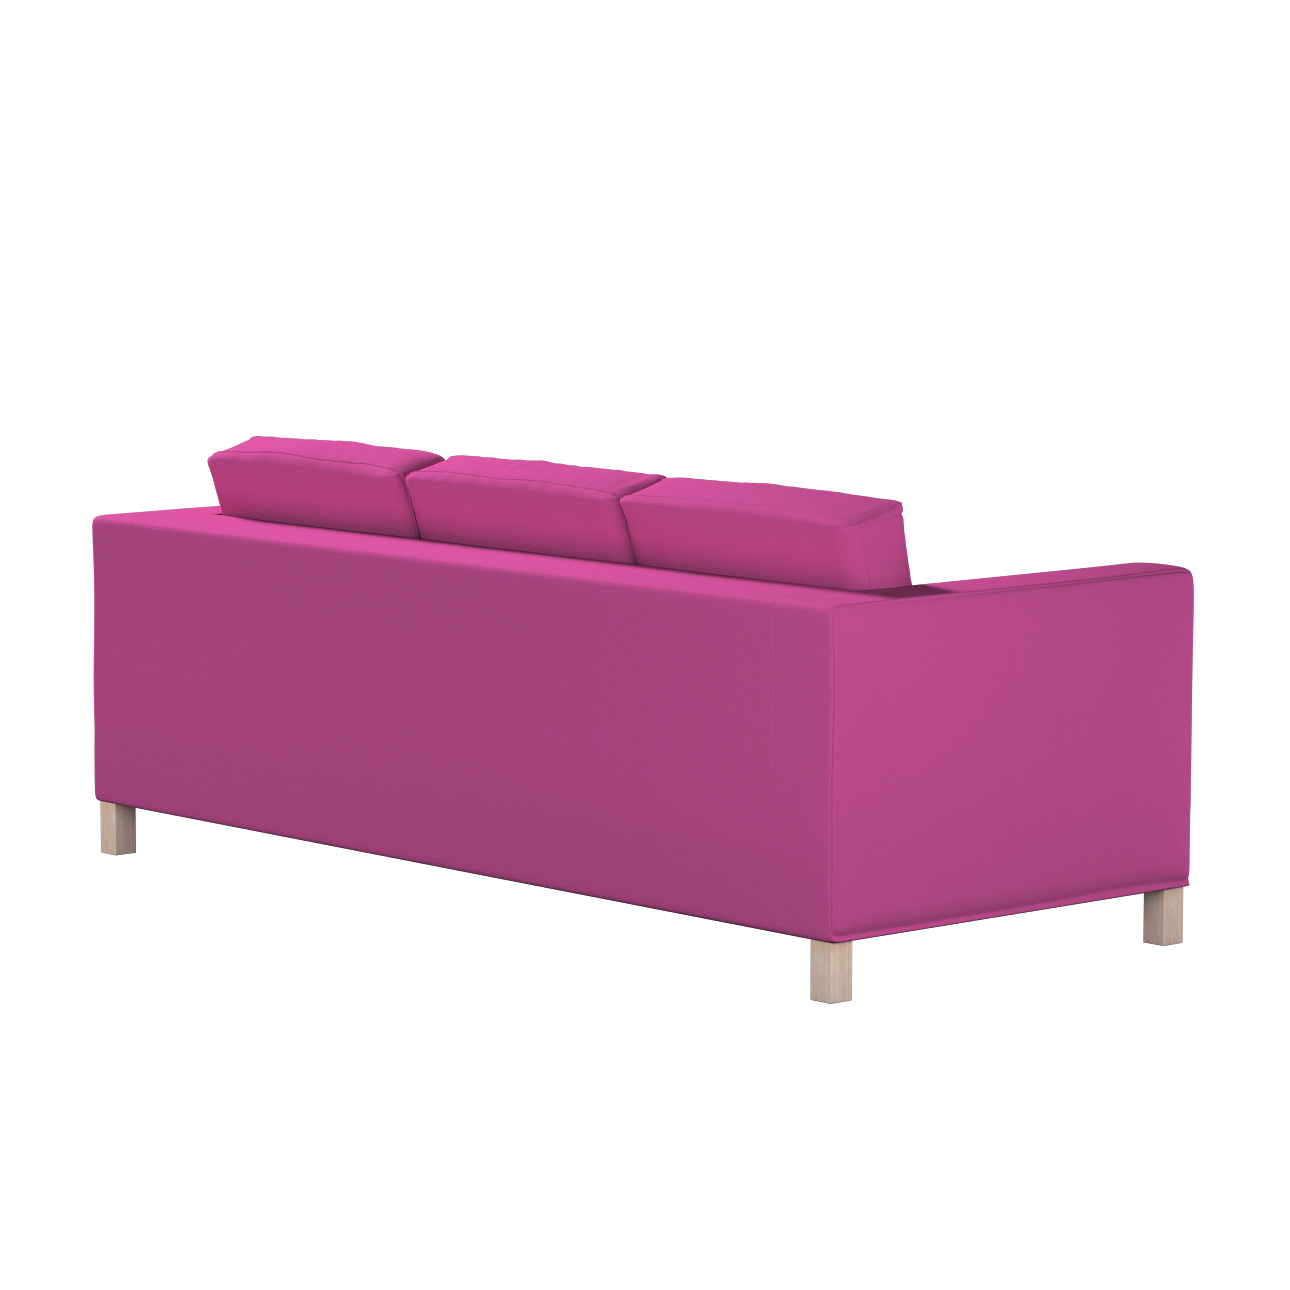 Bezug für Karlanda 3-Sitzer Sofa nicht ausklappbar, kurz, amarant, Bezug fü günstig online kaufen